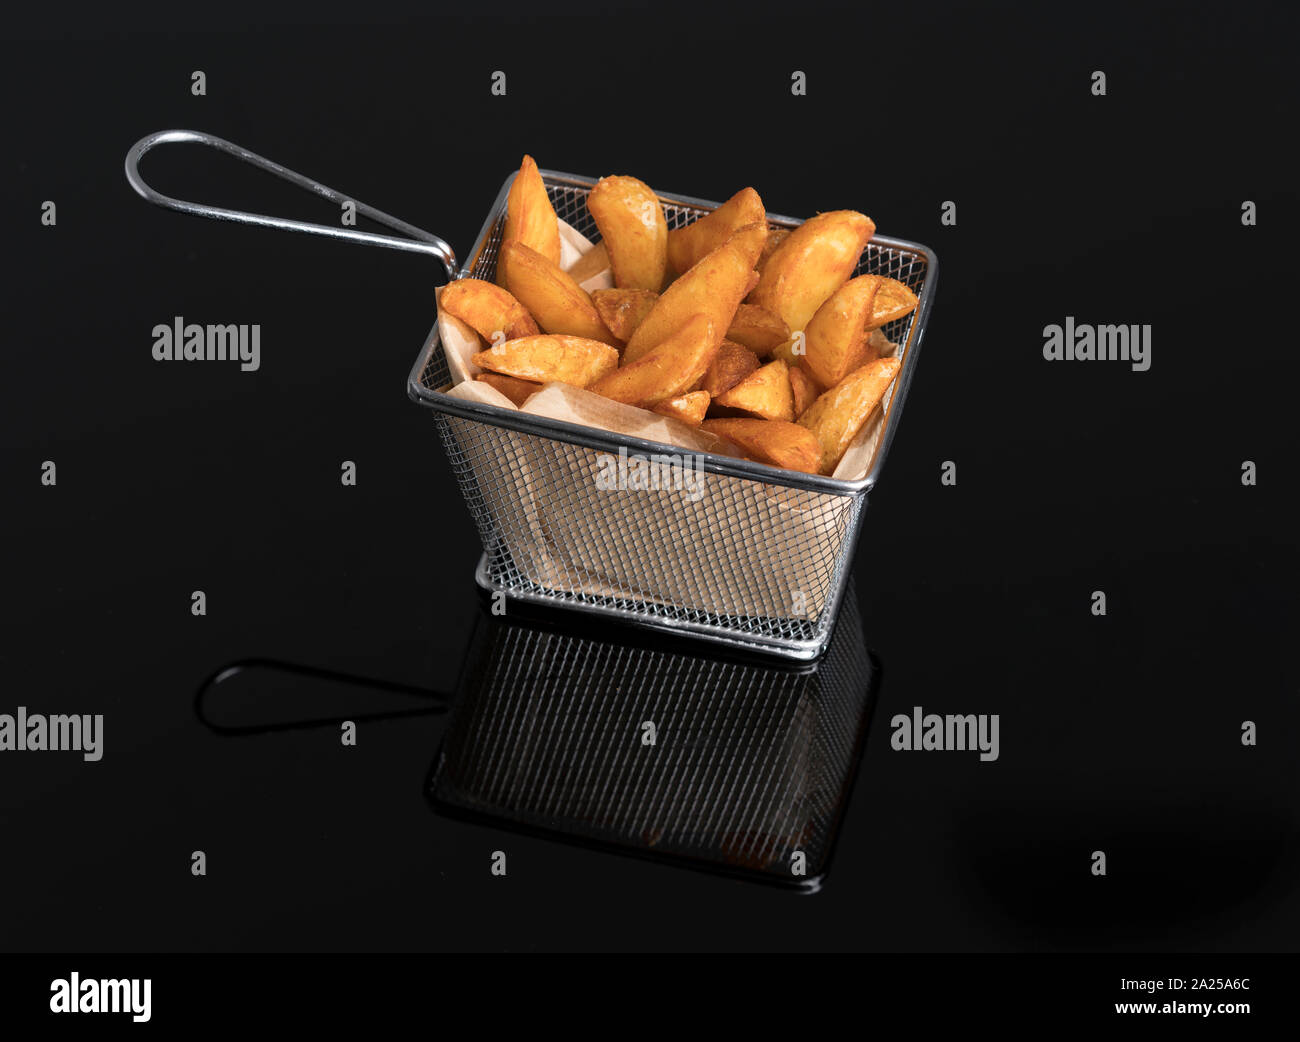 Patatas fritas en metacrilato negro en la canasta metálica Foto de stock